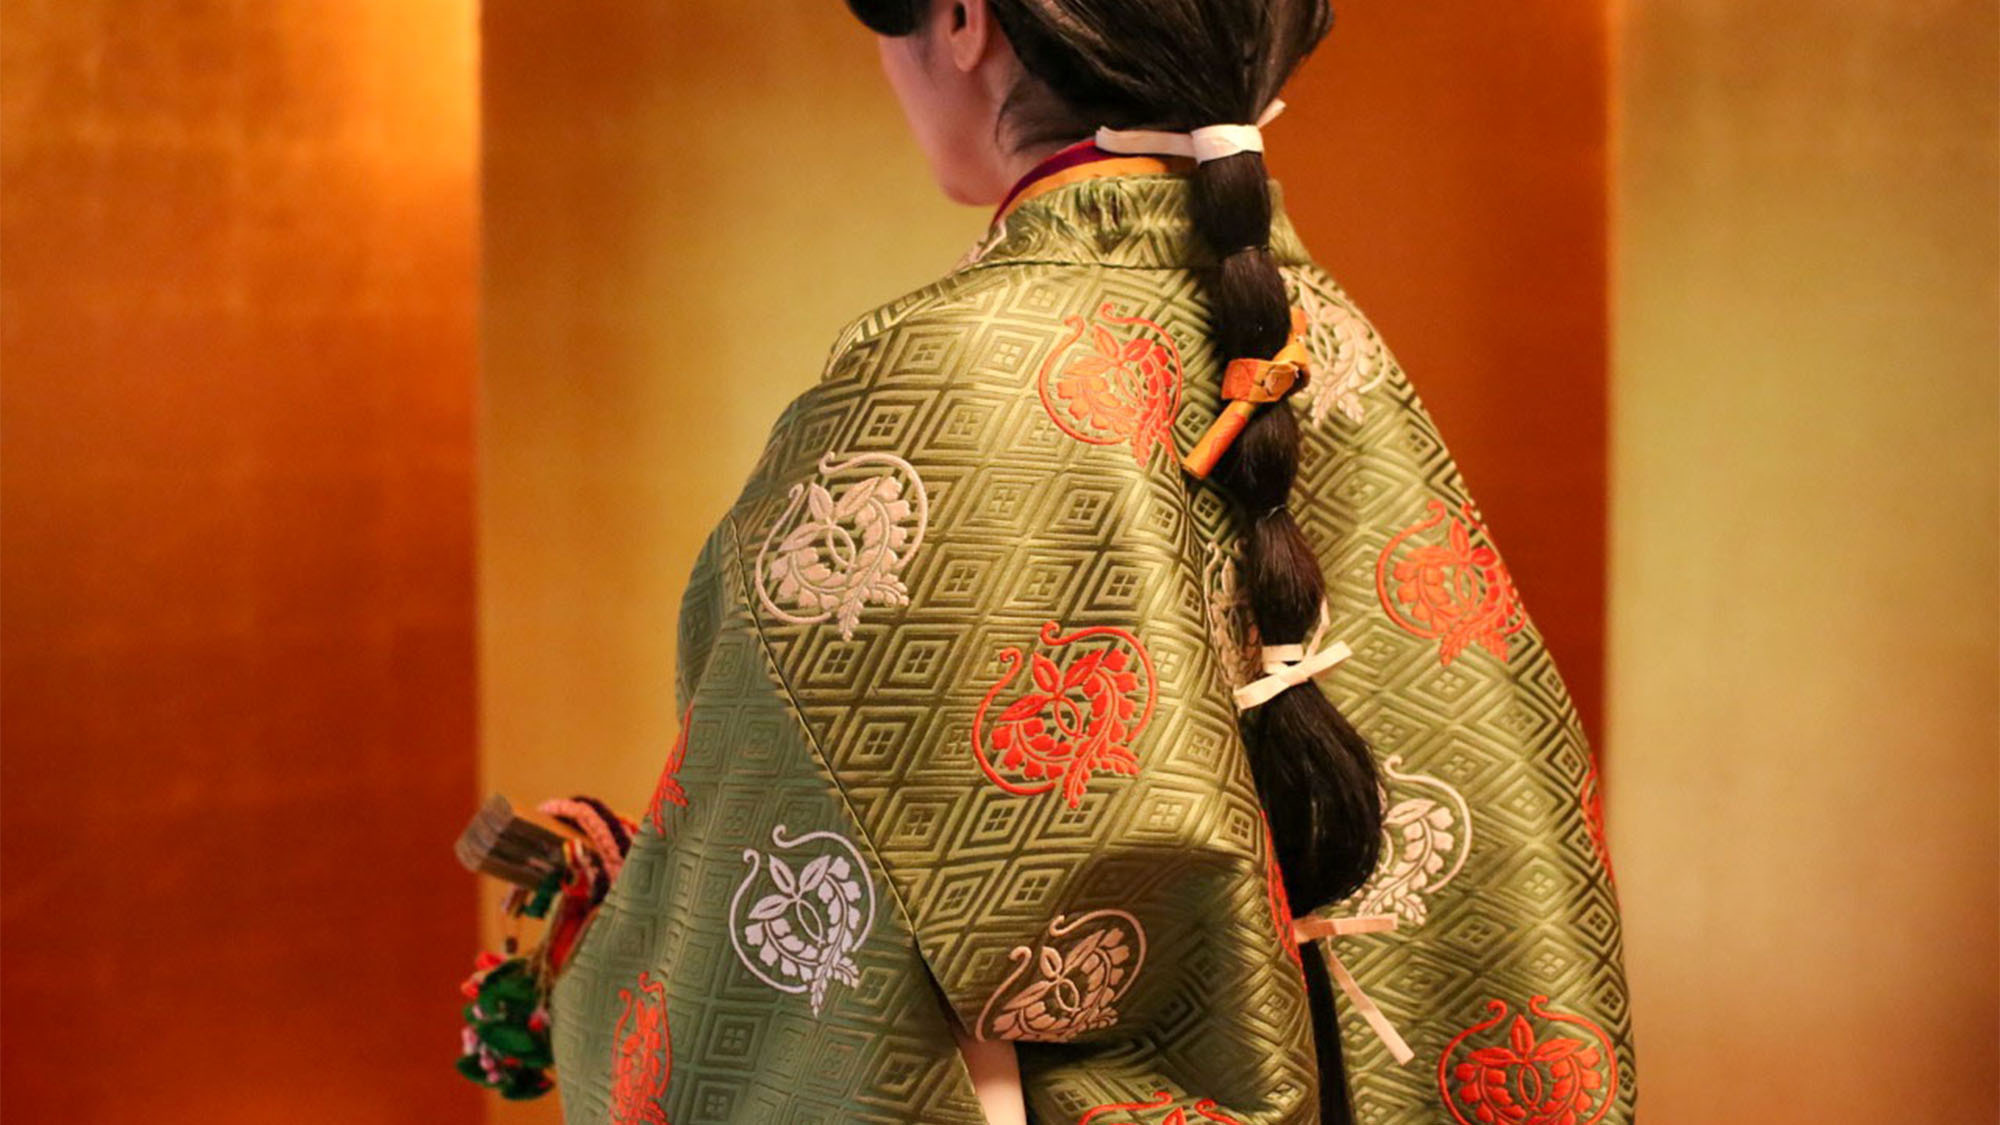 ・【装束】 私たちは日本の伝統、文化、芸術を継承して参ります